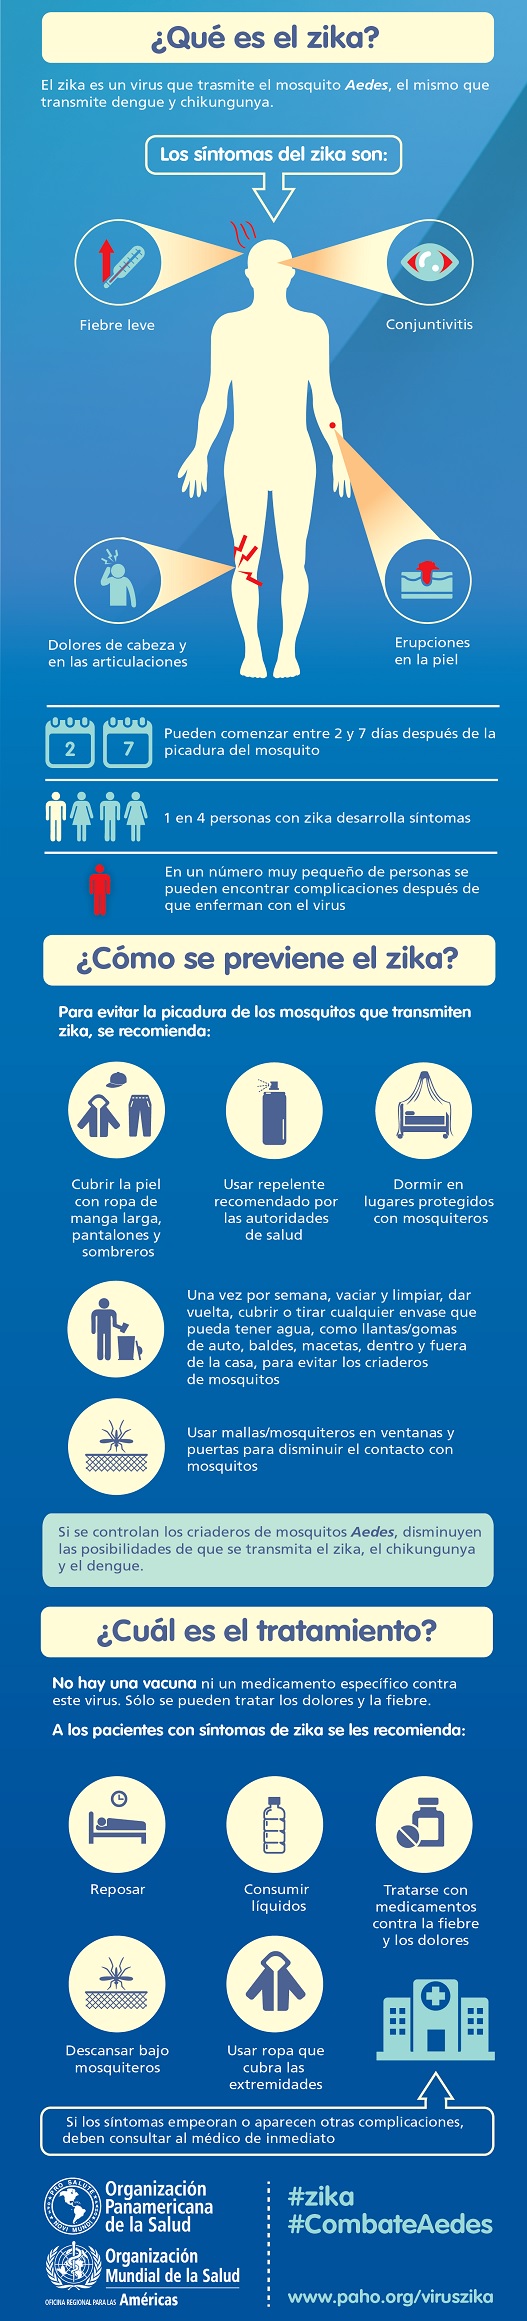 Virus del Zika, esquema. Fuente: Pan American Health Organization